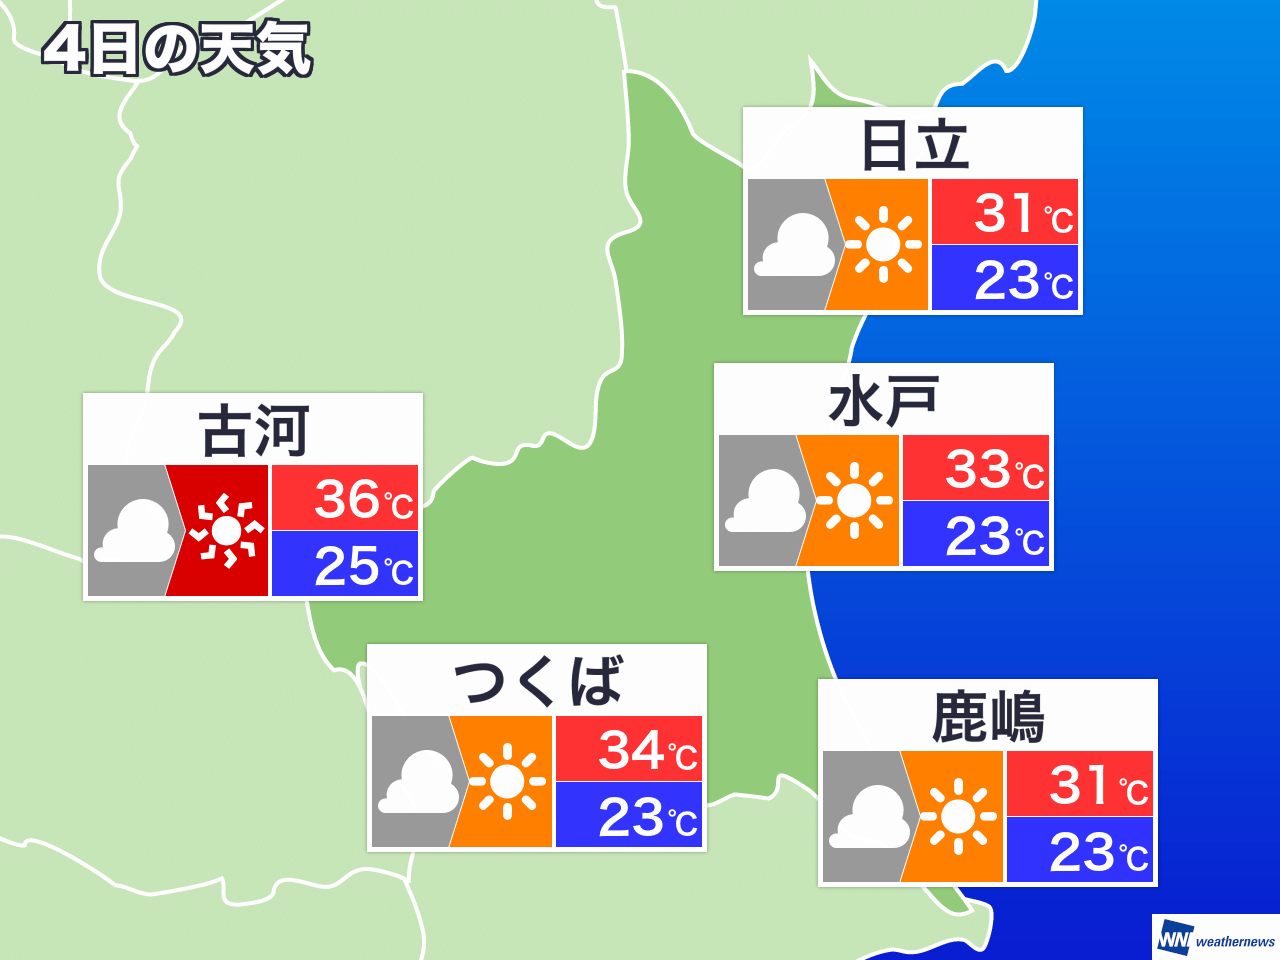 8月11日 水 茨城県の明日の天気 ウェザーニュース